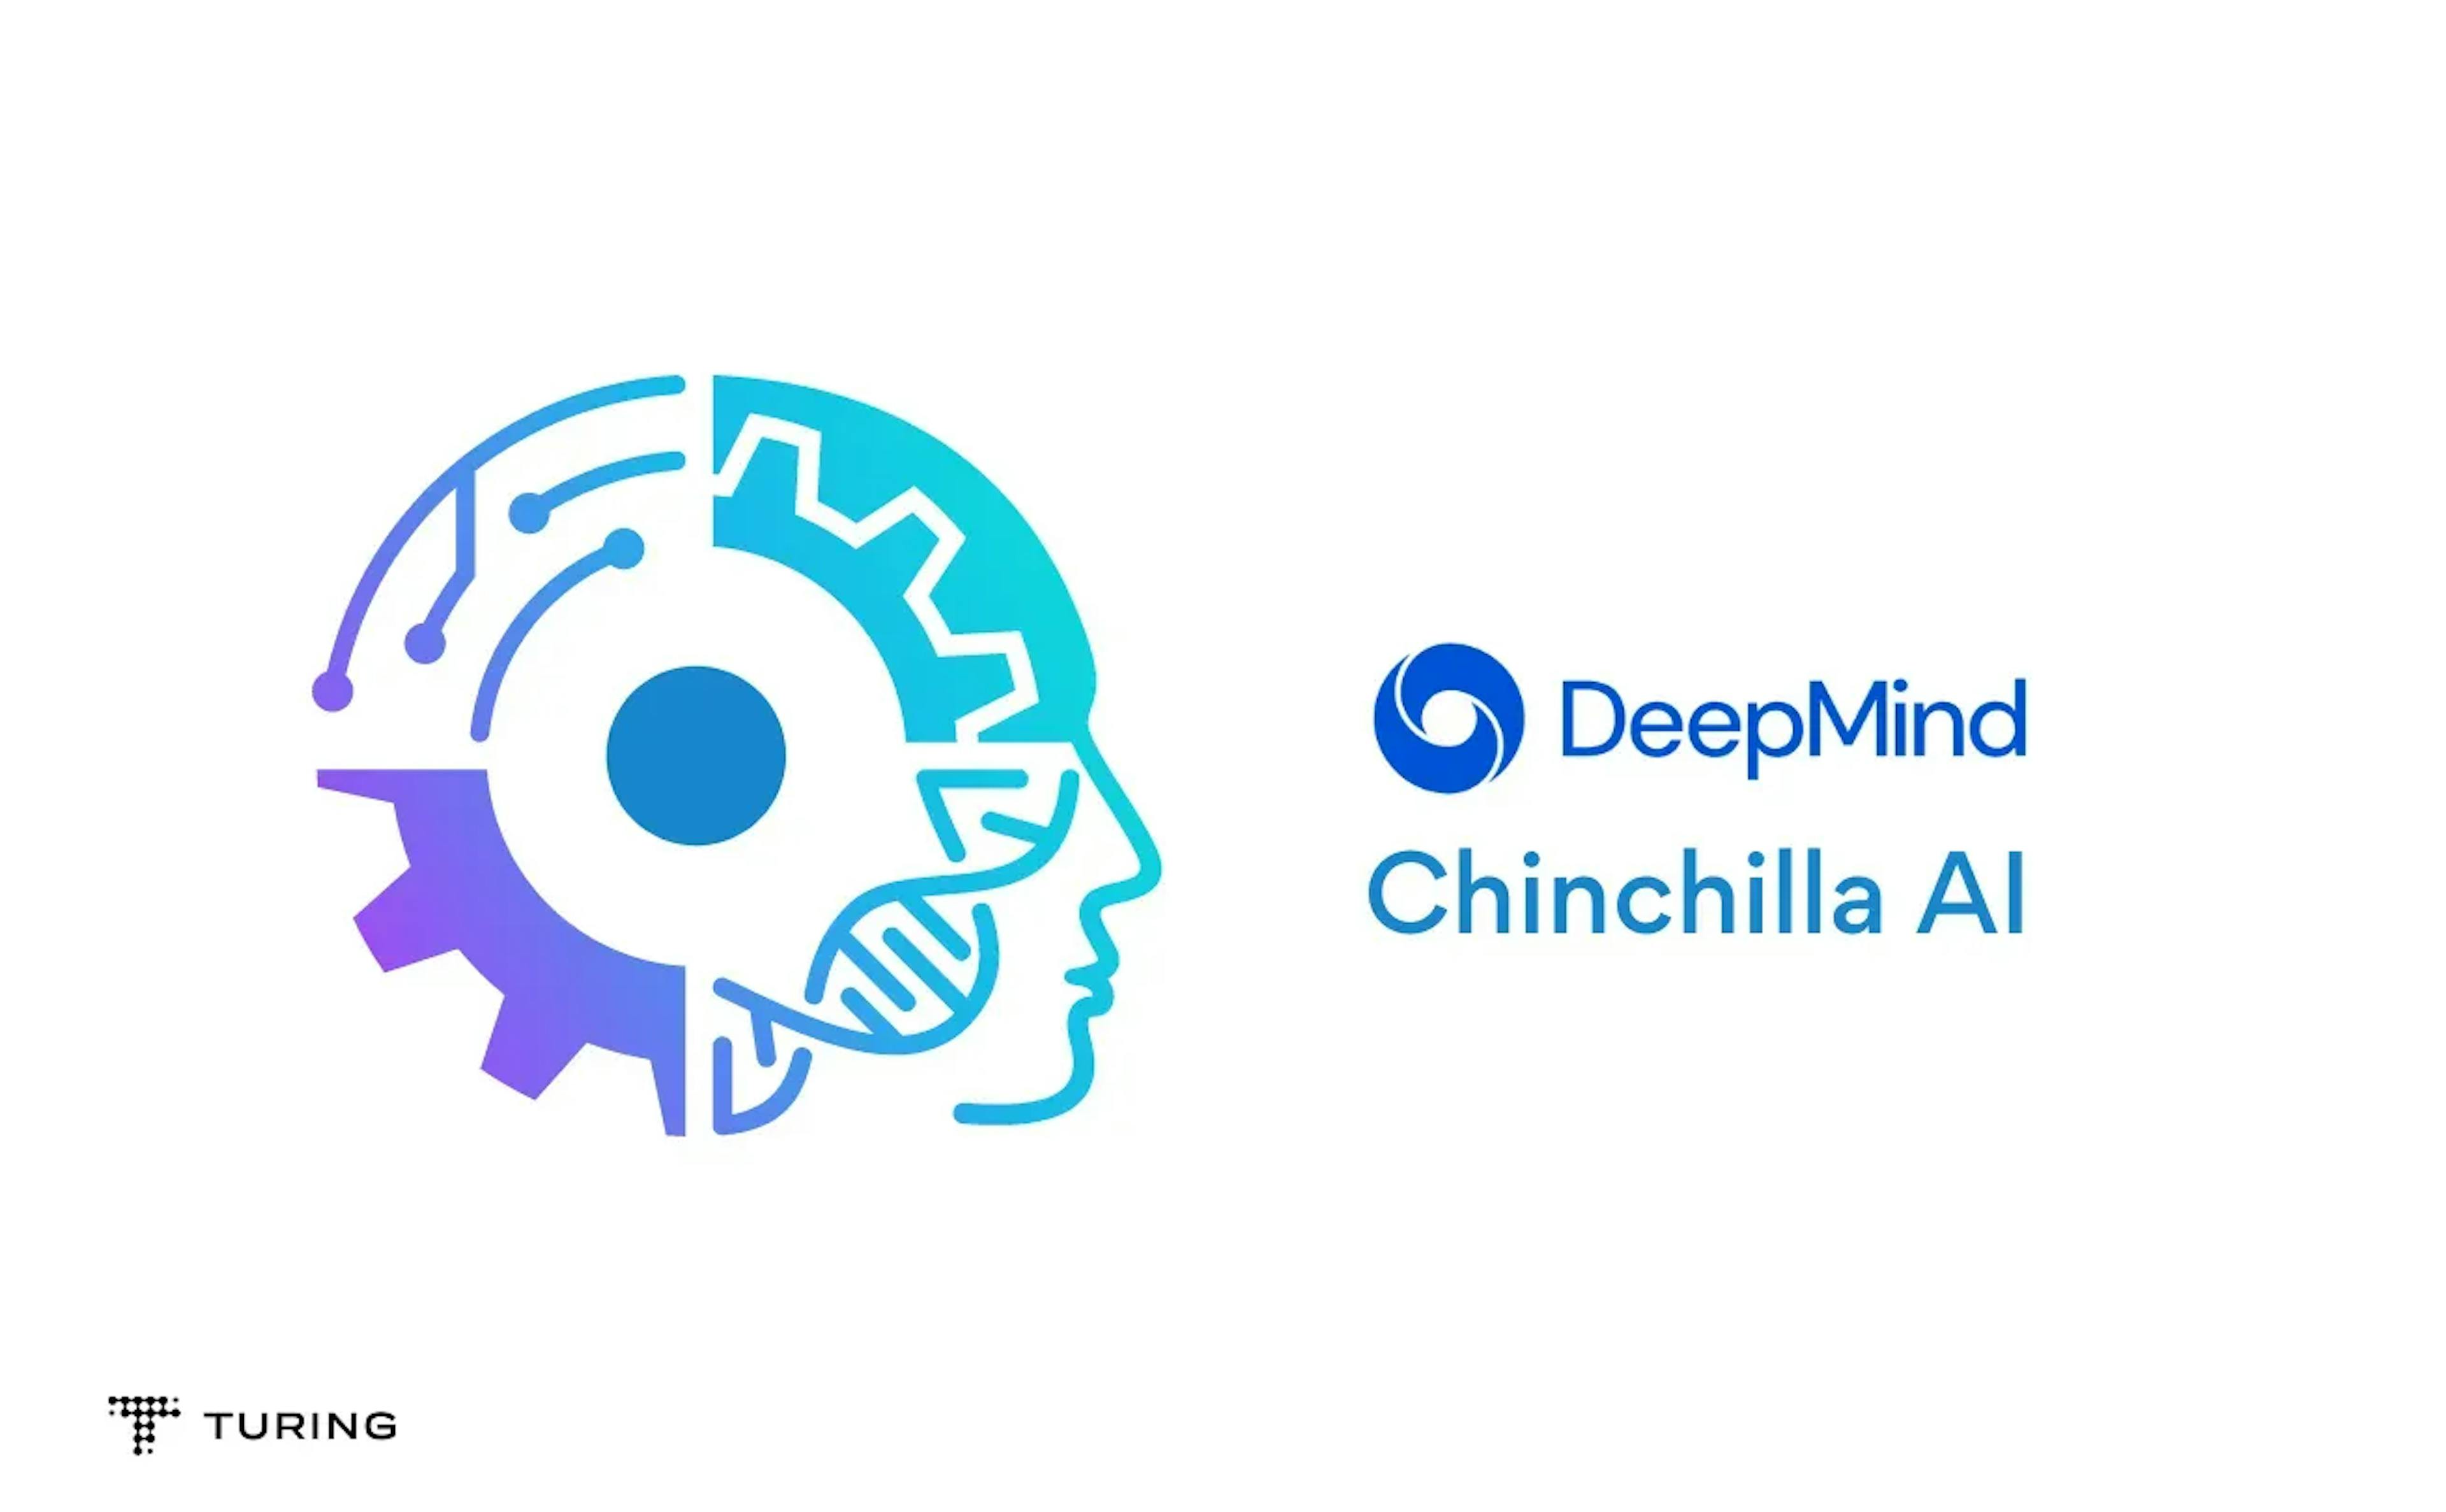 DeepMind's Chinchilla AI